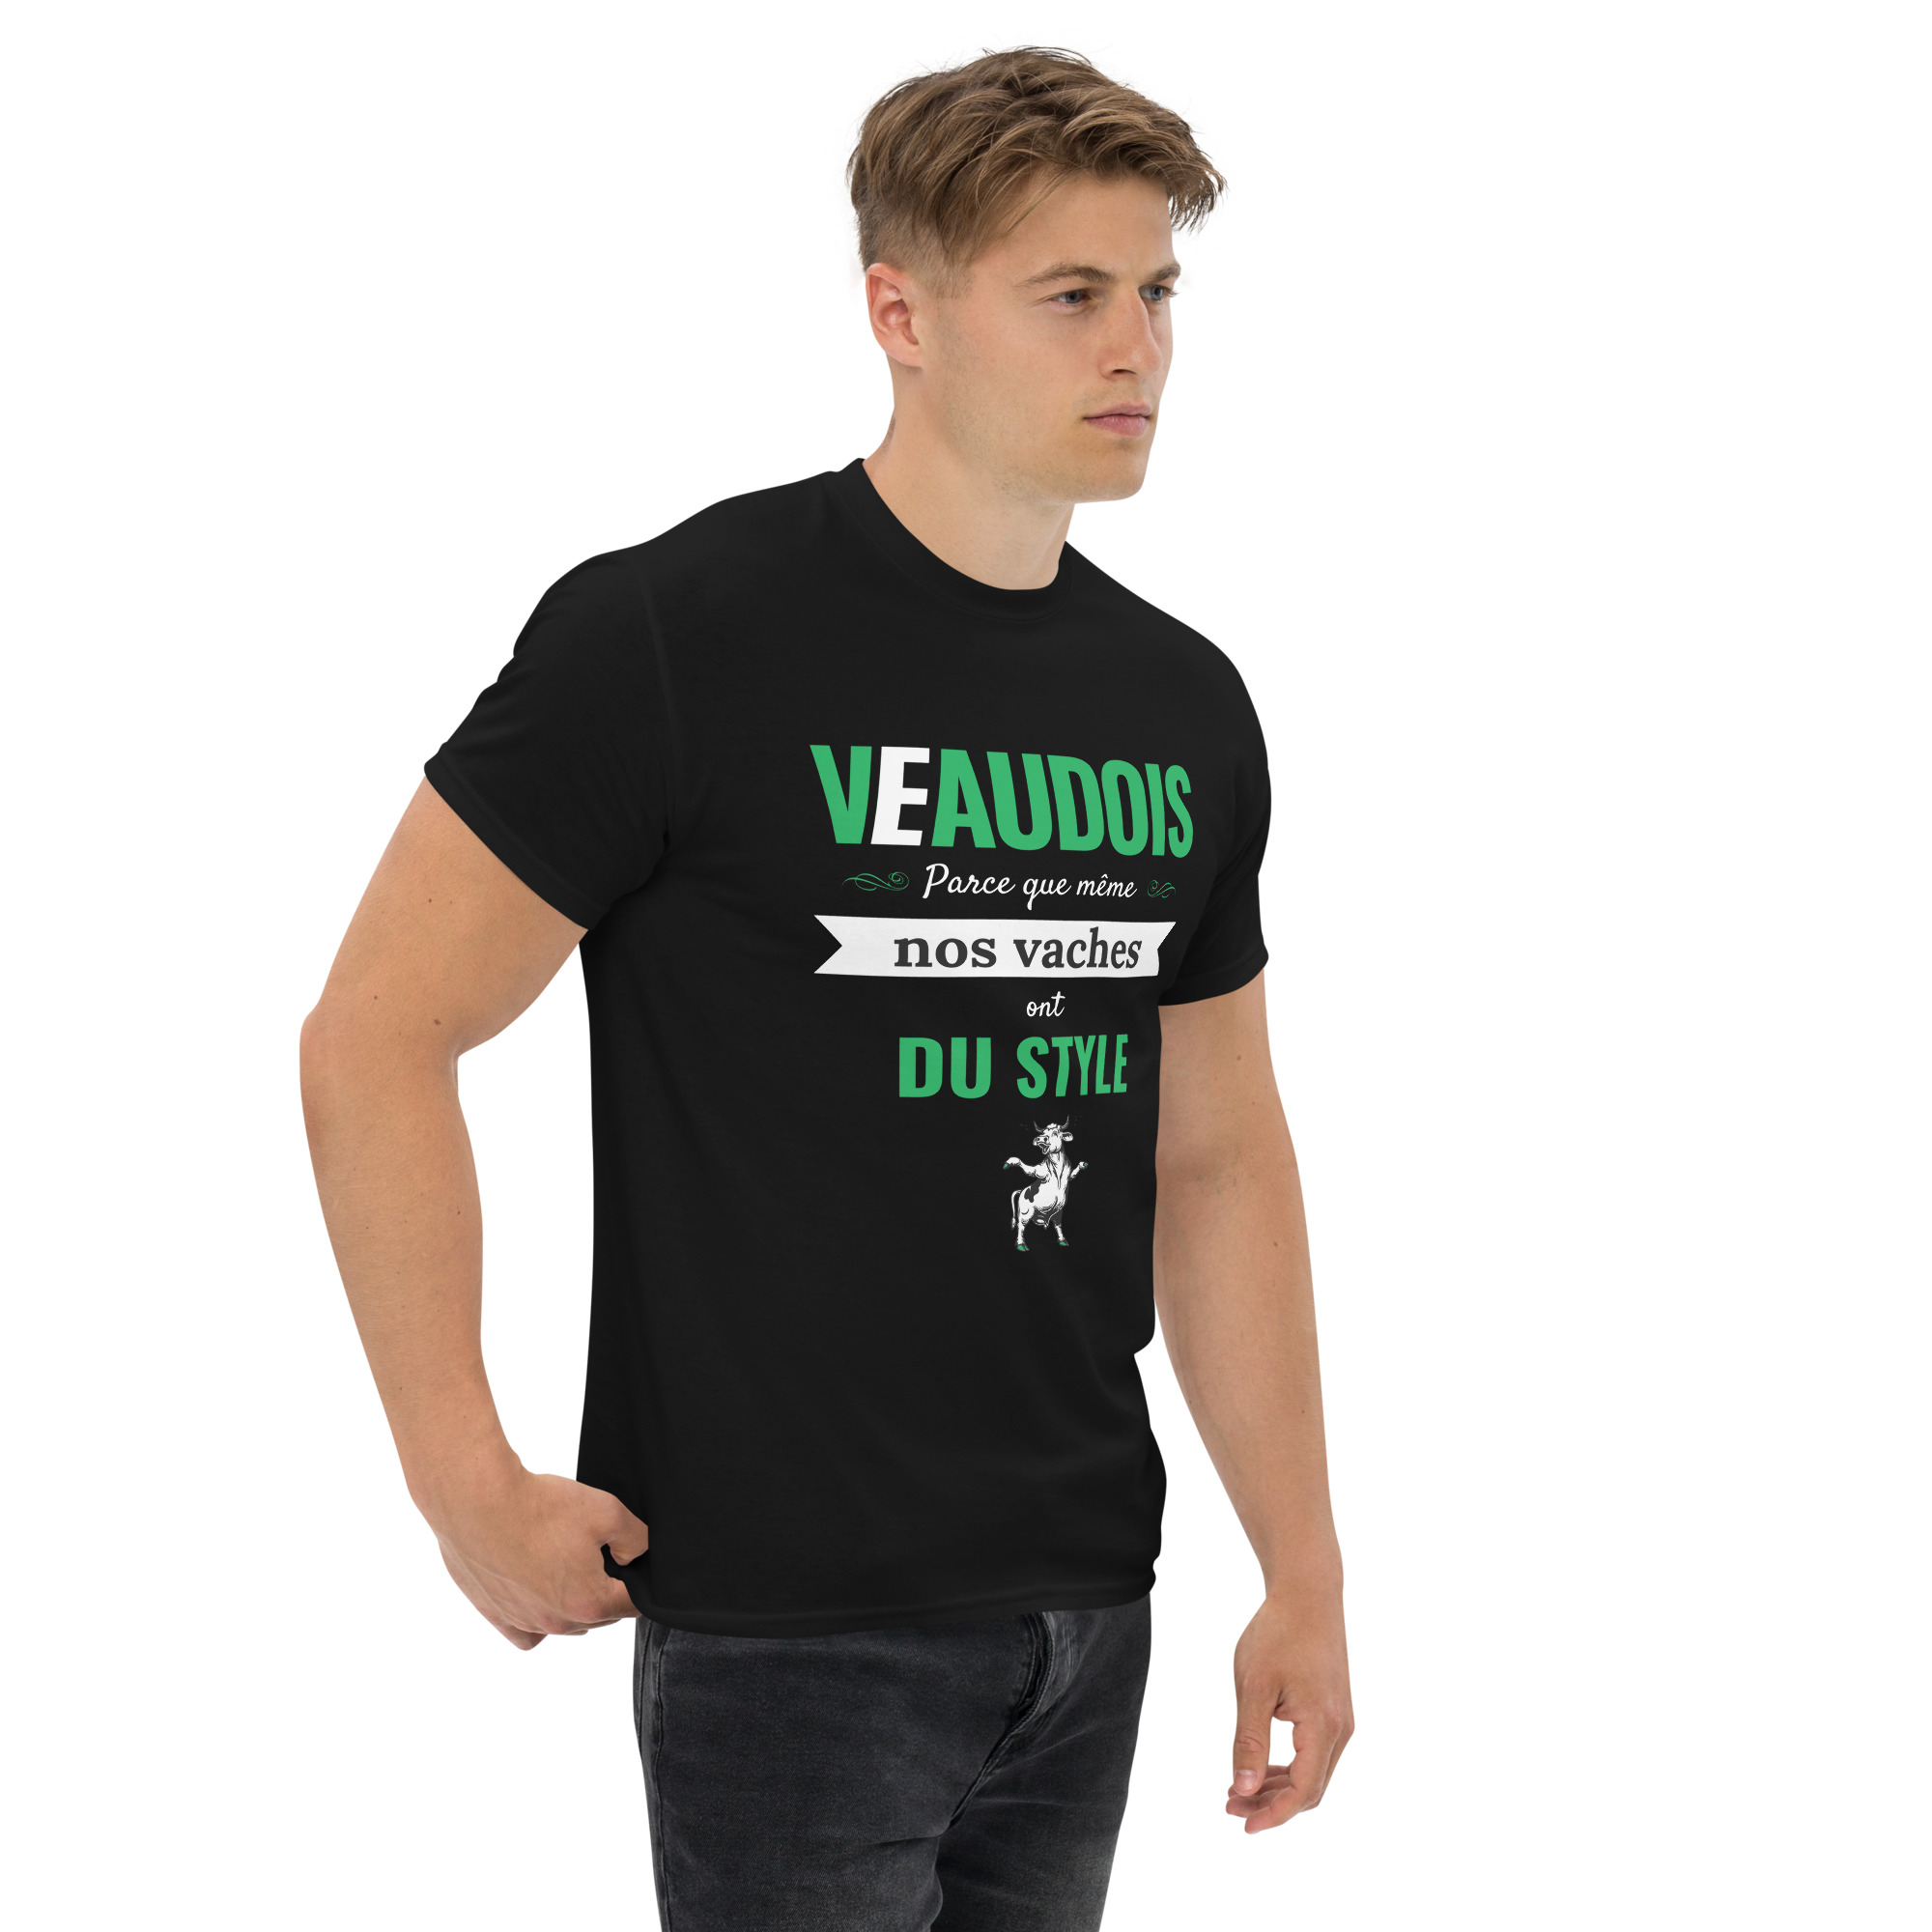 T-shirt – Les Vaudois – Parce que même nos vaches on du style T-Shirts Wearyt